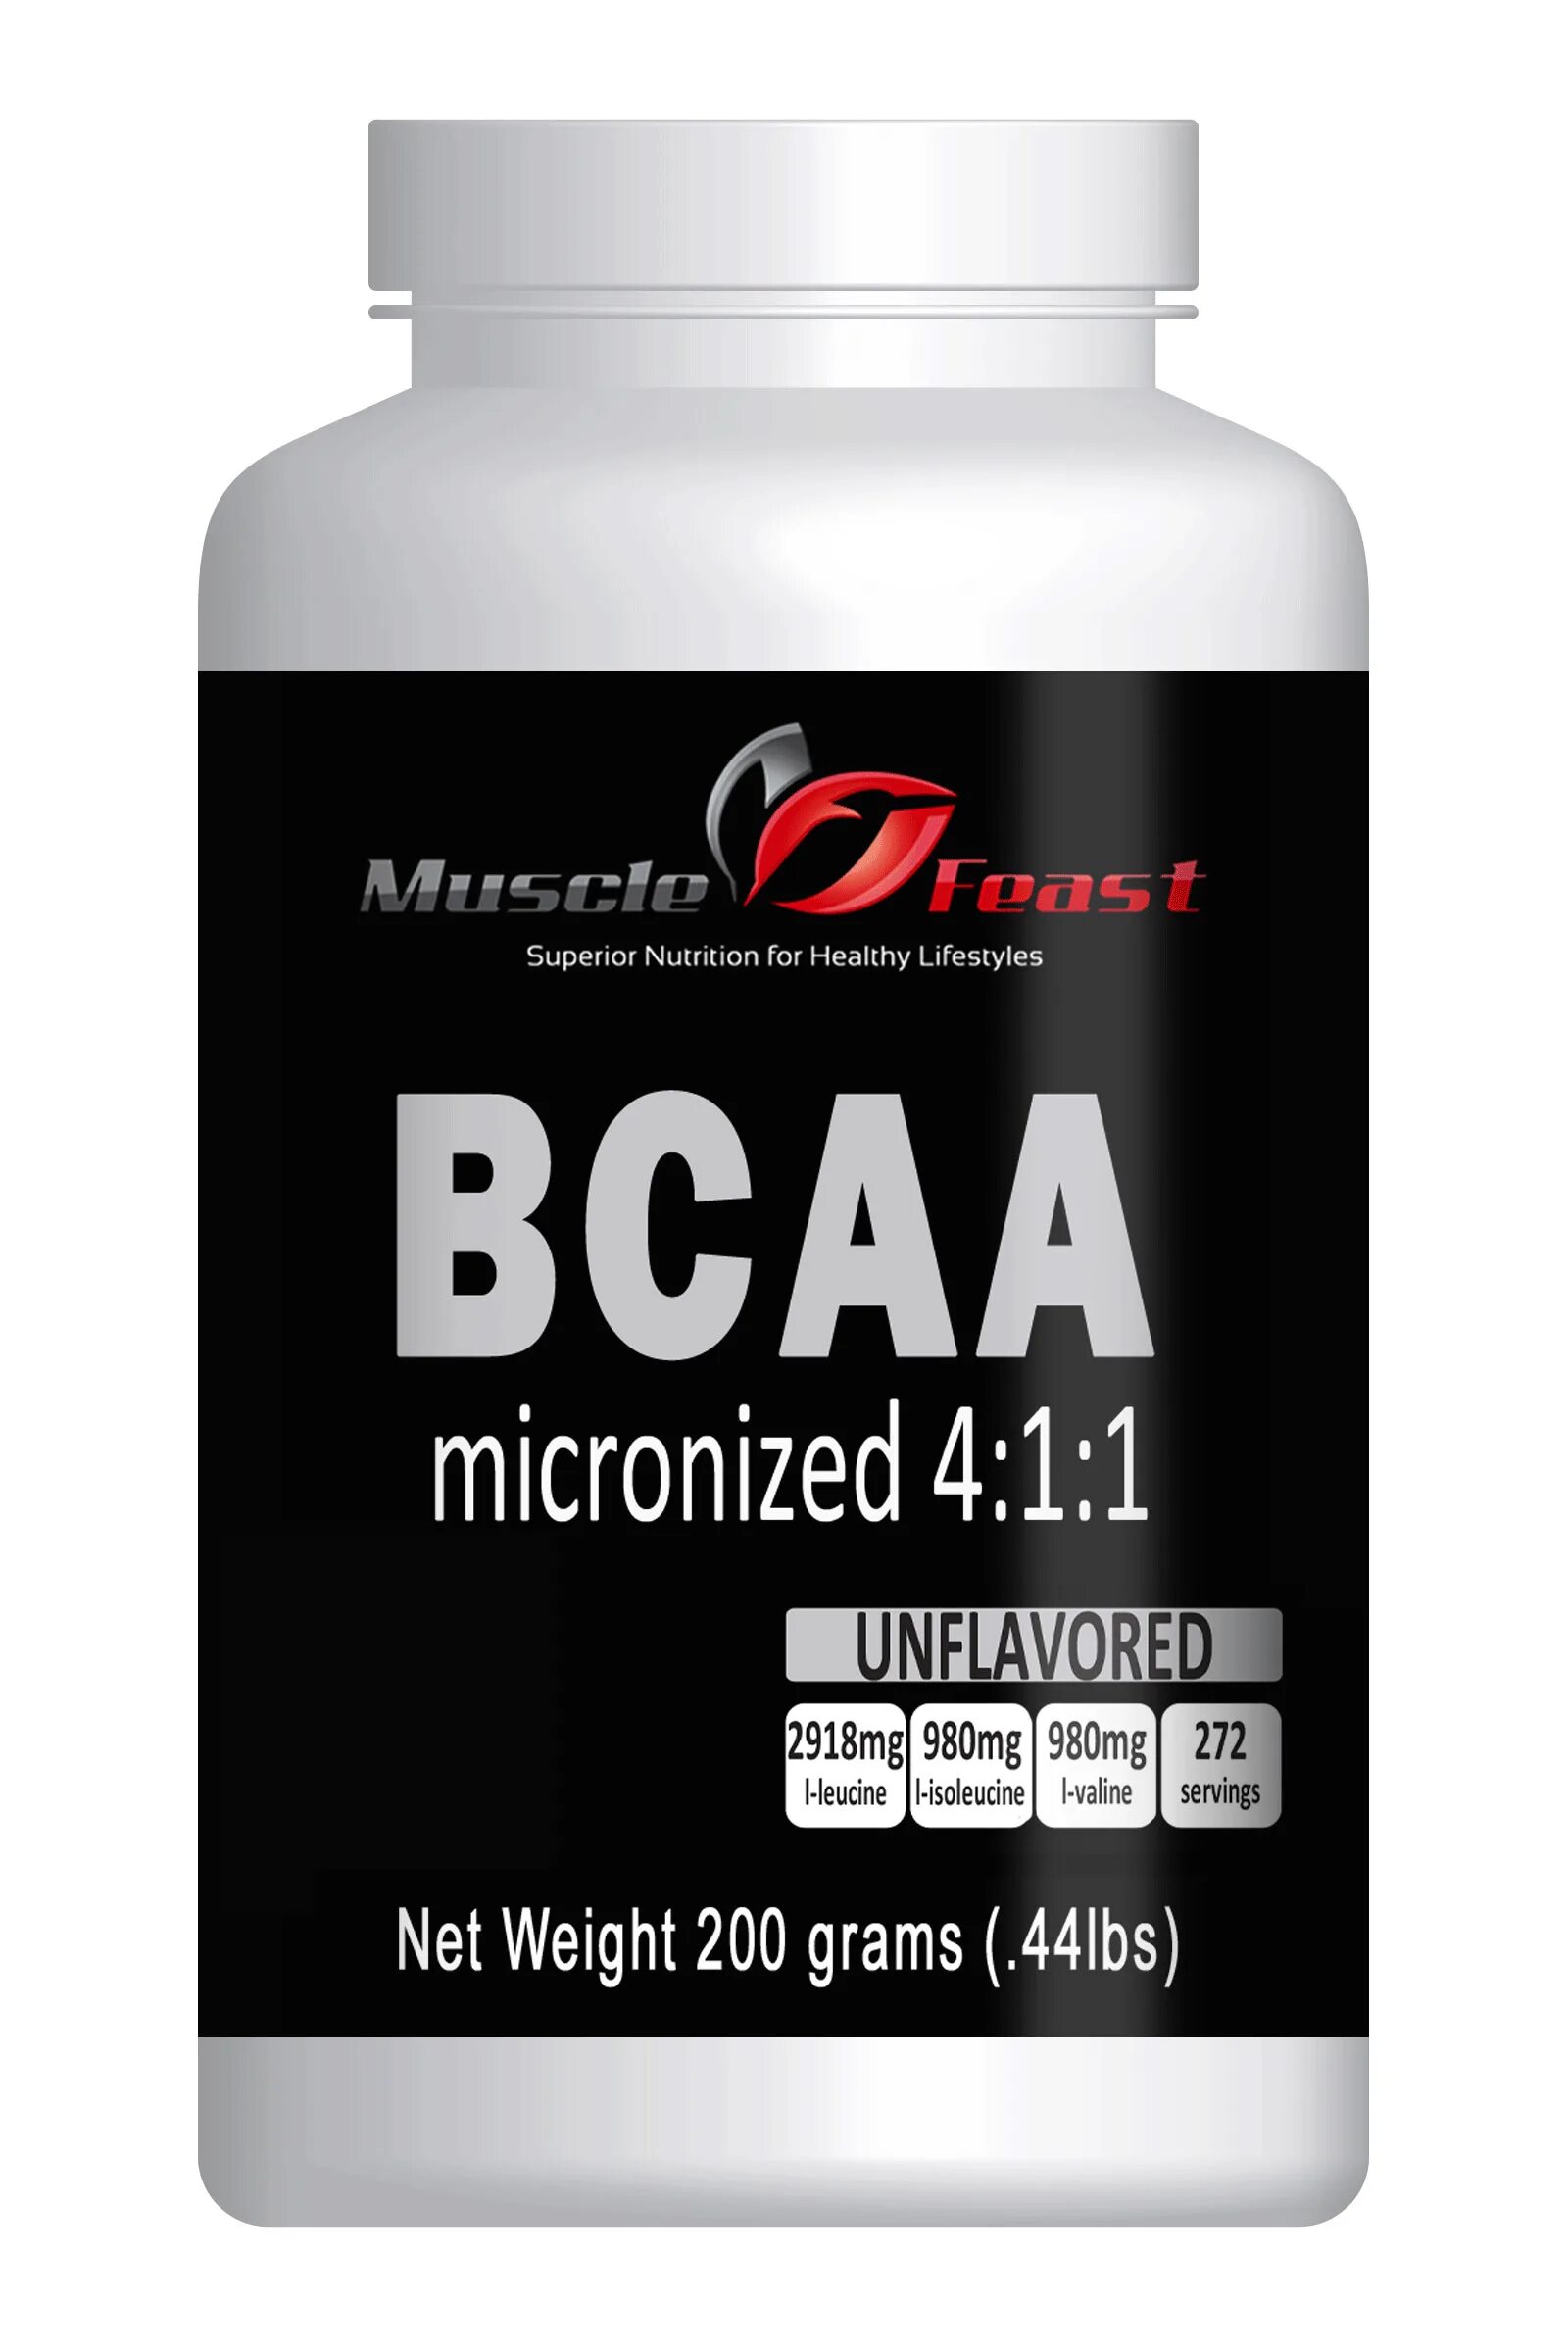 BCAA Микронизед. BCAA эффект. BCAA В красной упаковке. Бца что это такое в медицине